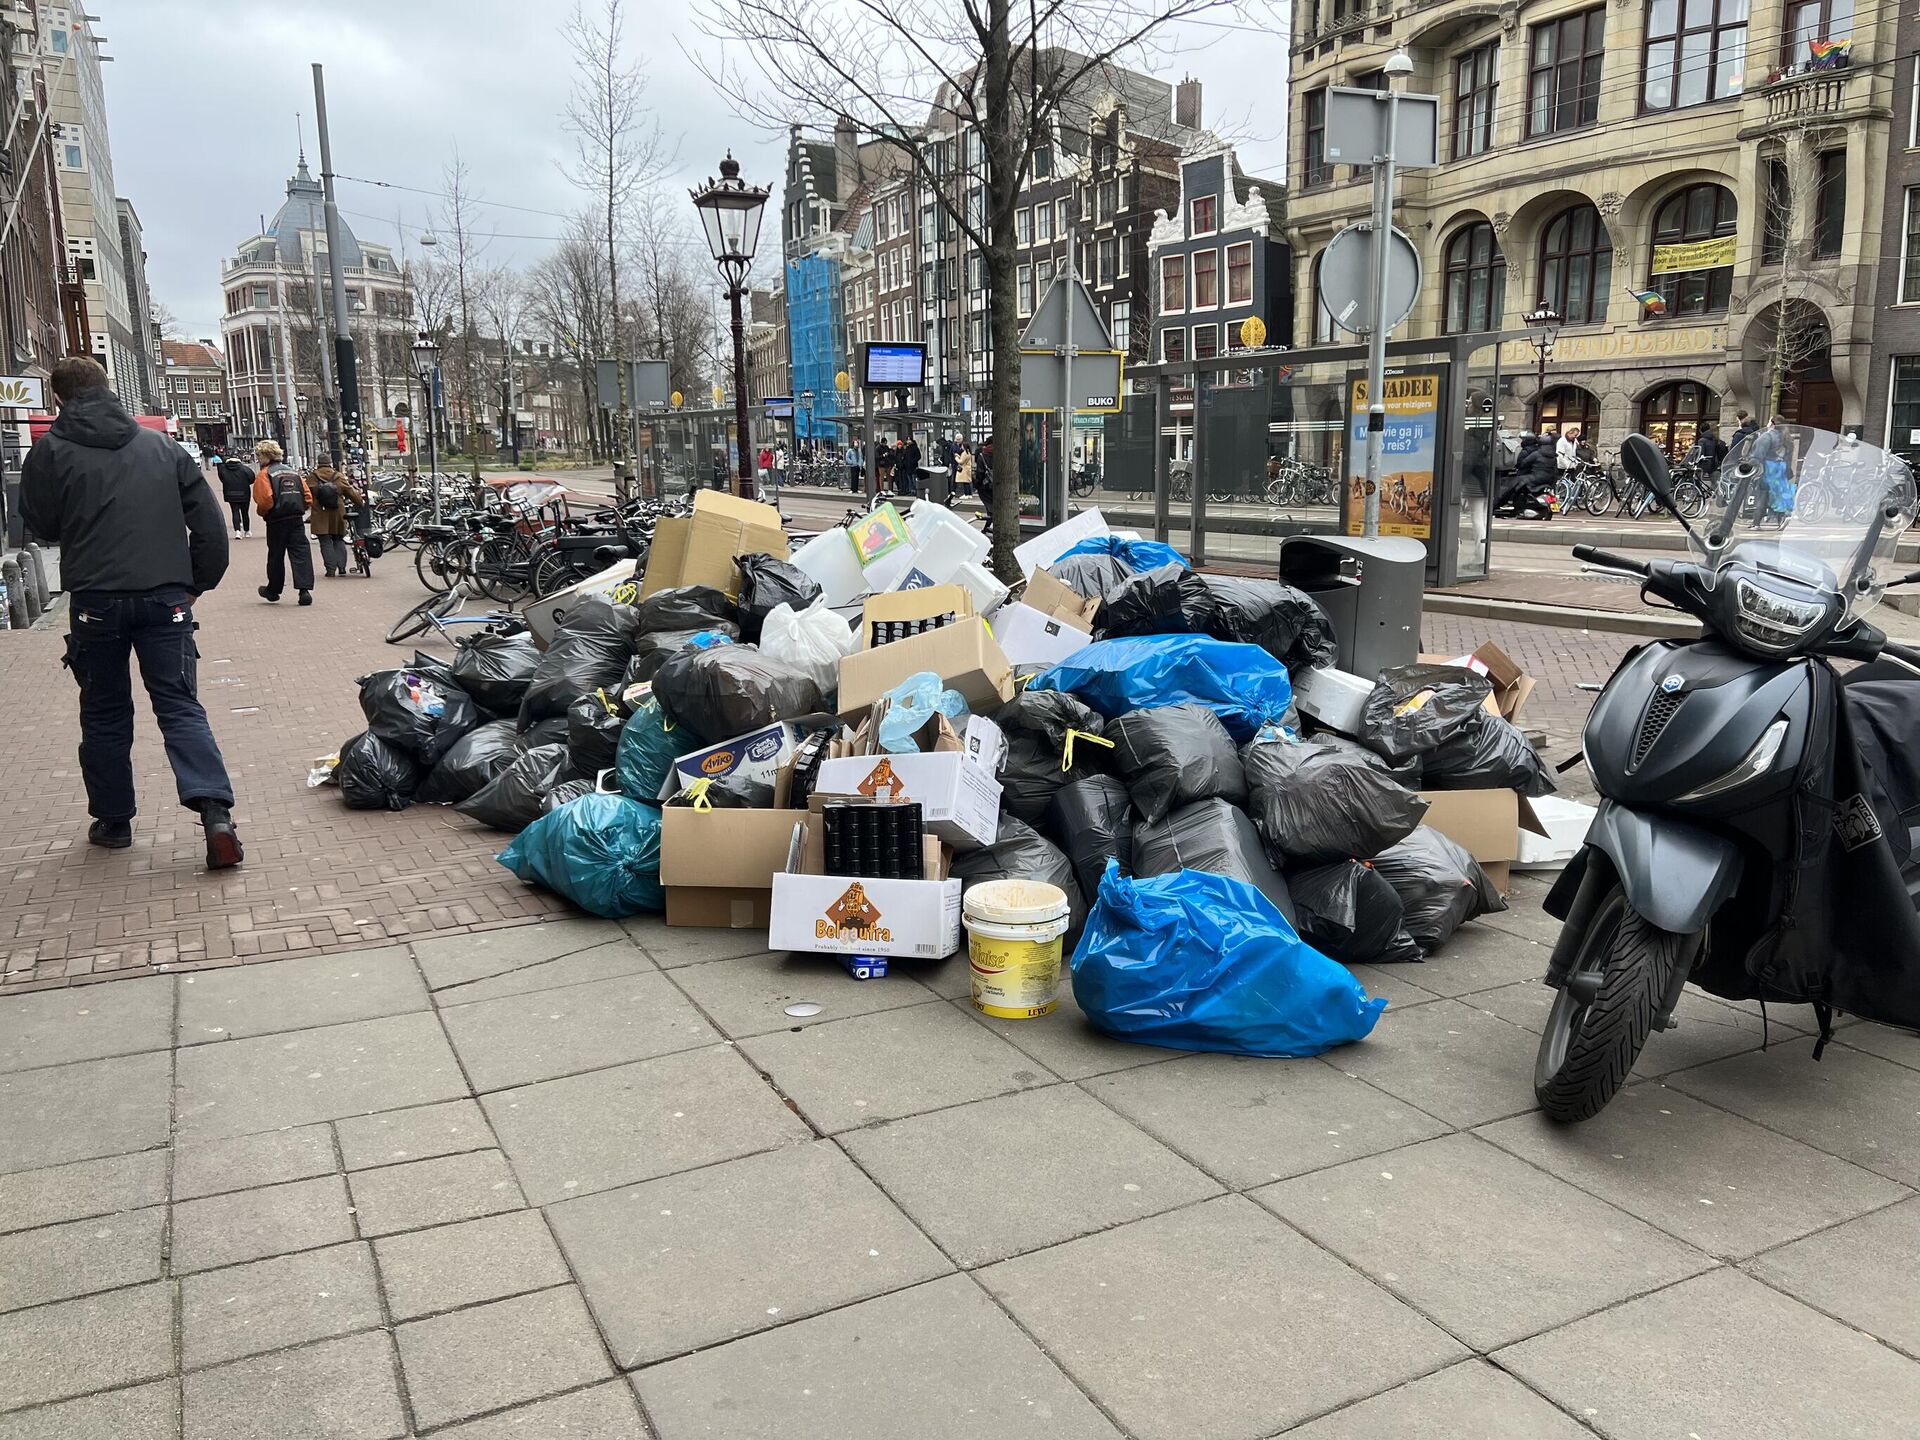 Hollanda'nın başkenti Amsterdam'da temizlik işçilerinin toplu iş sözleşmesindeki zam oranının iyileştirilmesi talebiyle başlattığı 1 haftalık grev nedeniyle sokaklarda çöp yığınları oluştu - Sputnik Türkiye, 1920, 21.02.2023